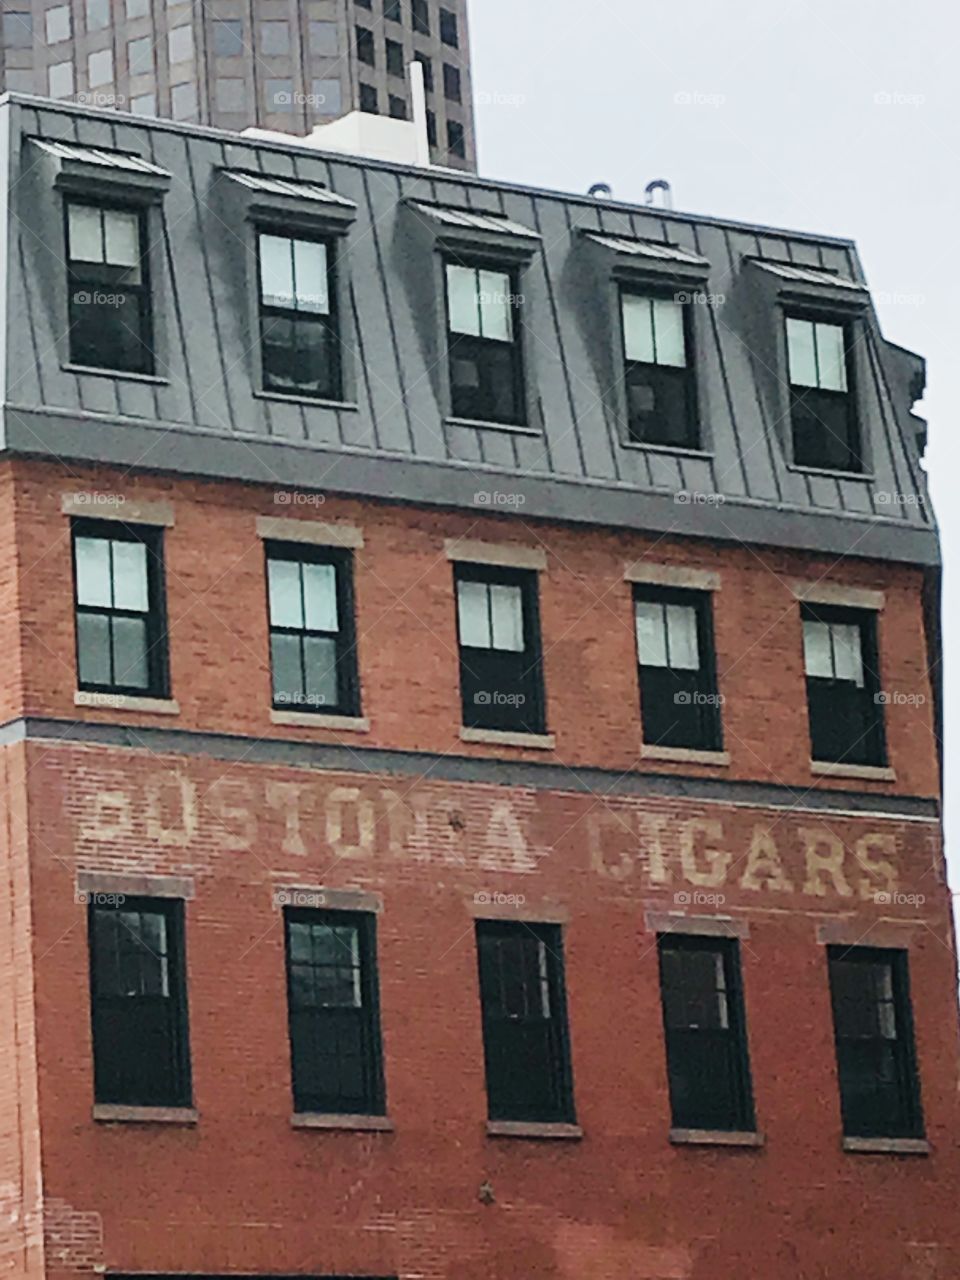 Bostonia Cigars 